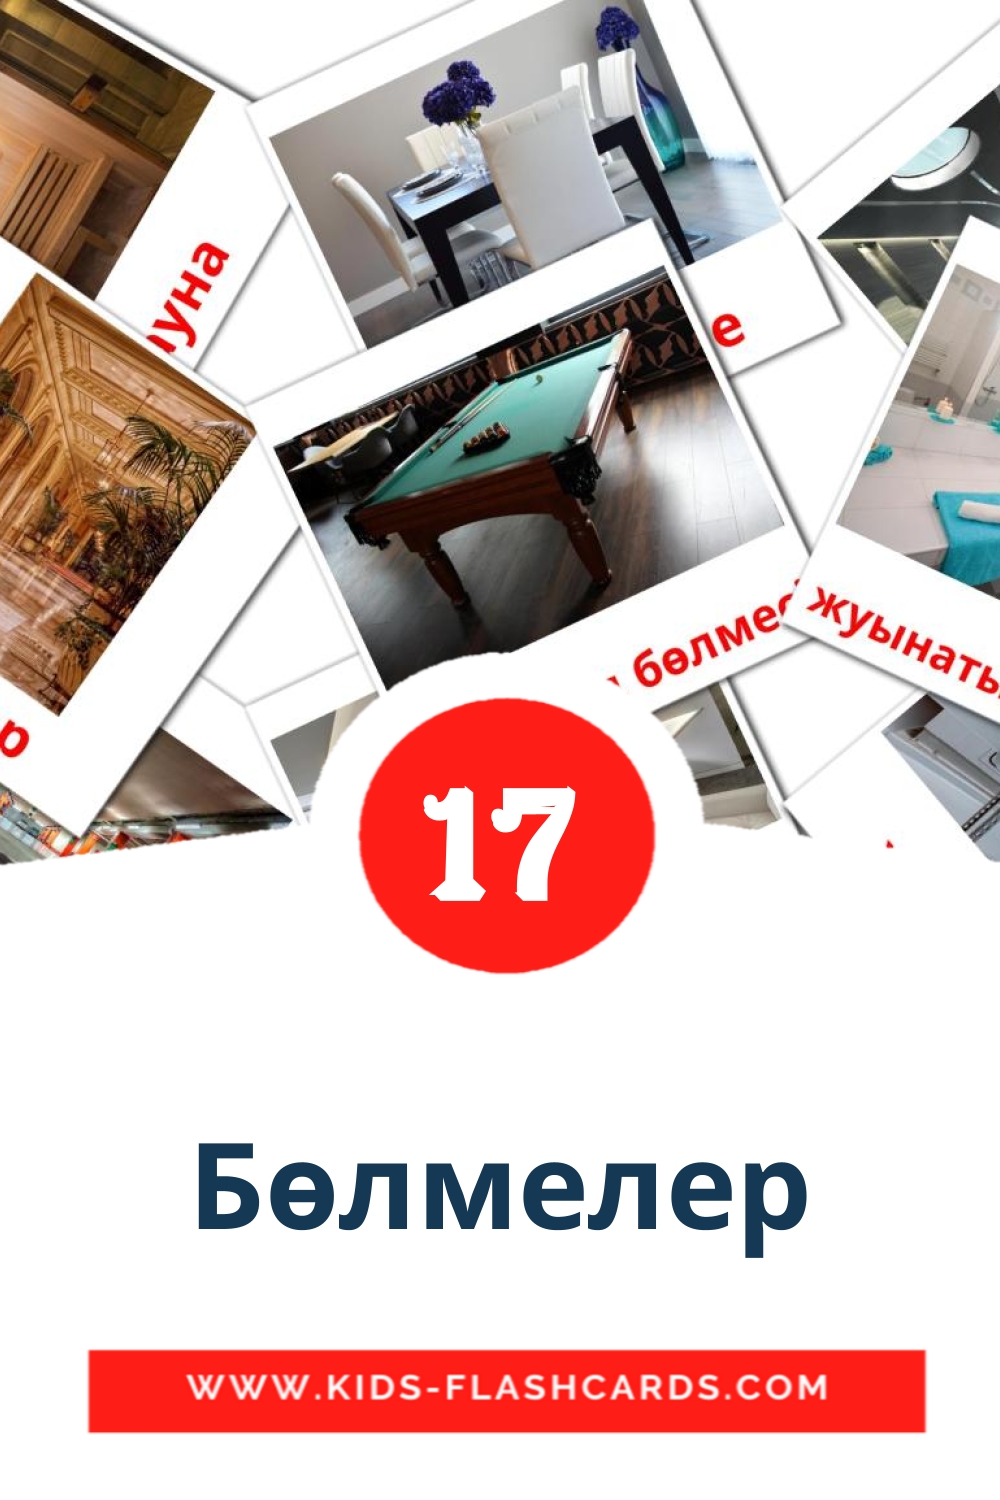 17 tarjetas didacticas de Бөлмелер para el jardín de infancia en kazajo